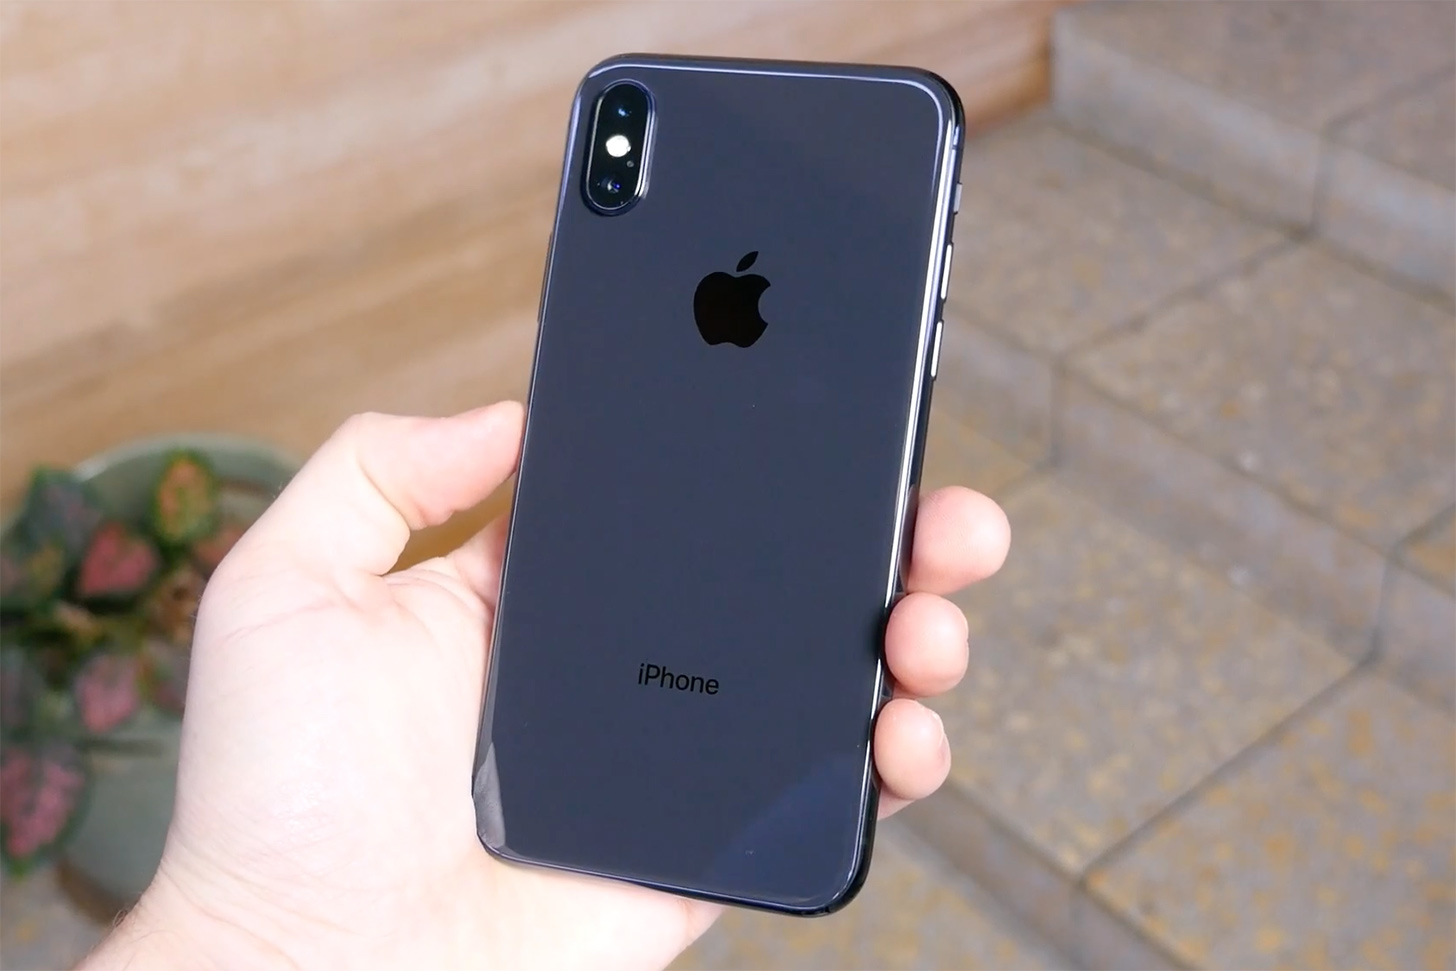 Apple kabarnya akan memberikan model iPhone 2020 desain baru dan dukungan 5G